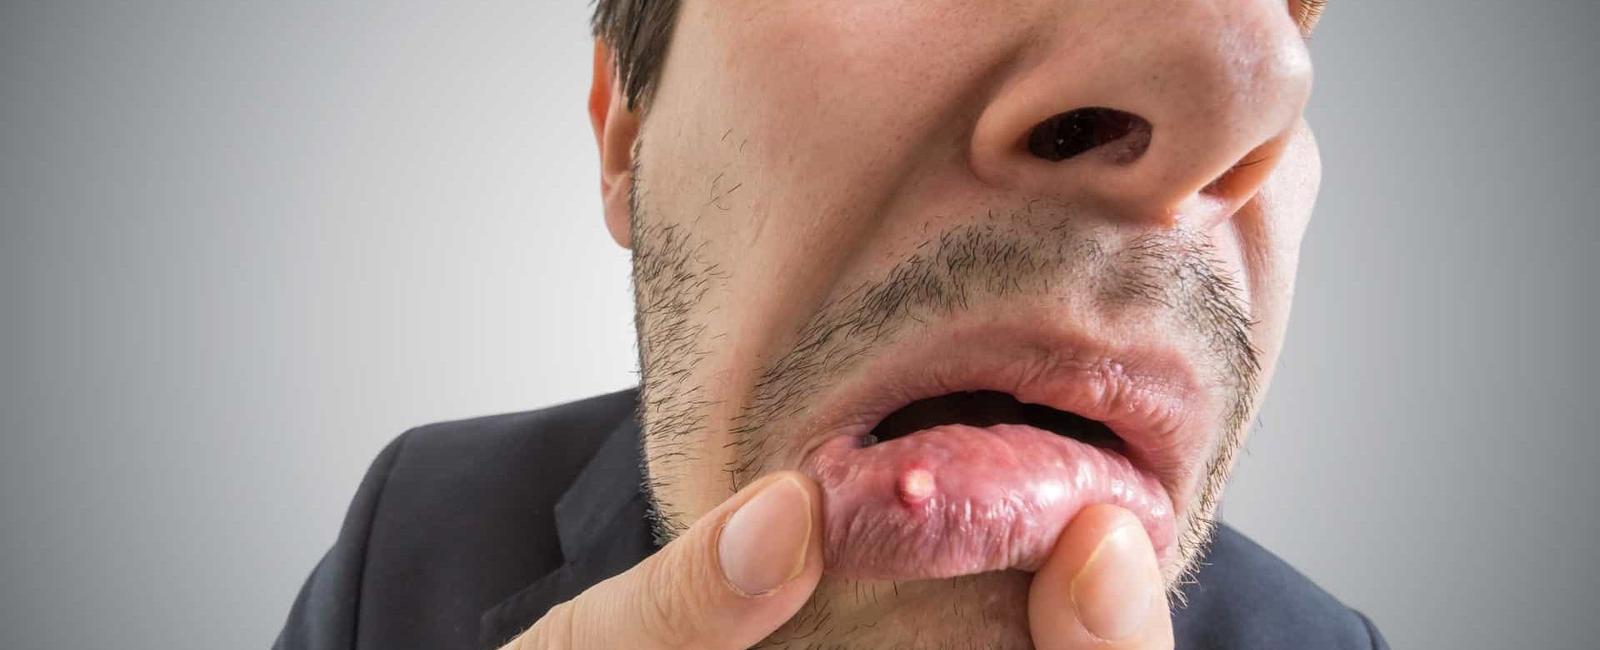 O que é bom para afta na boca? 5 dicas seguras e aprovadas por dentistas